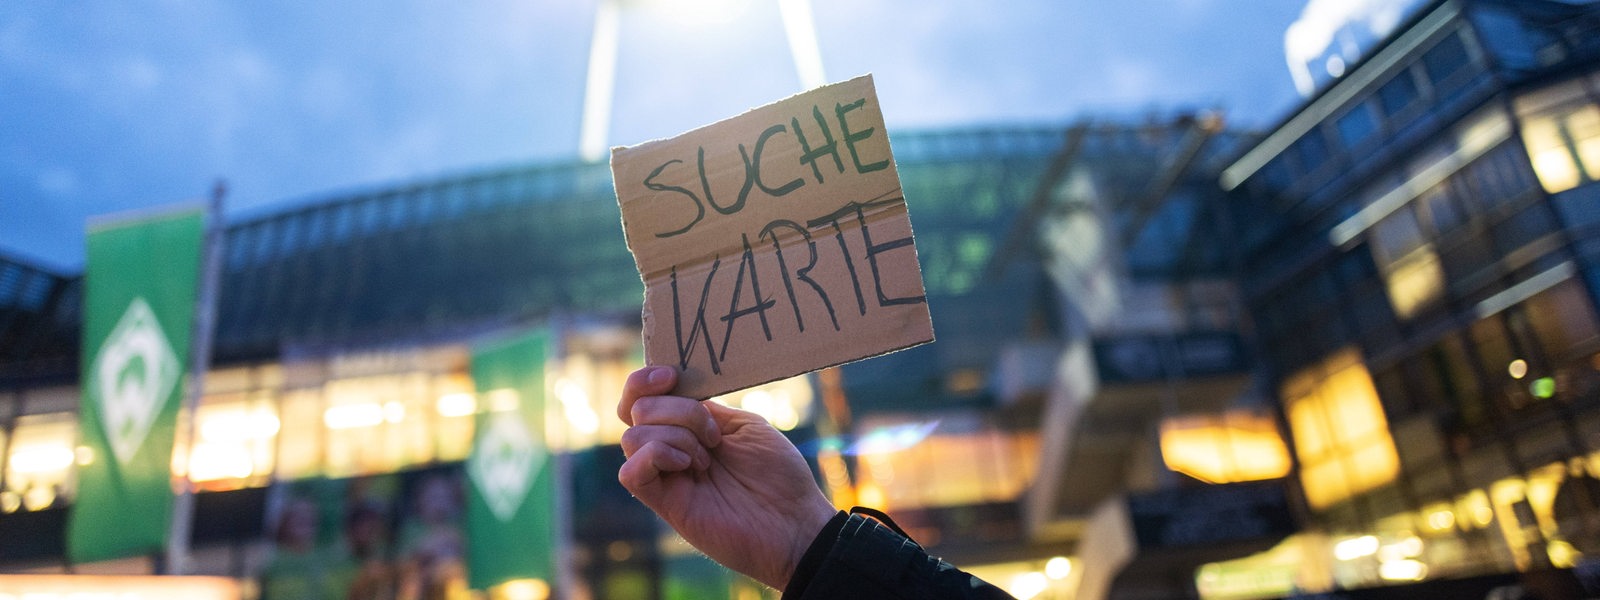 Vor dem Weser-Stadion hält ein Fans ein Pappschild hoch mit der Aufschrift "Suche Karte".